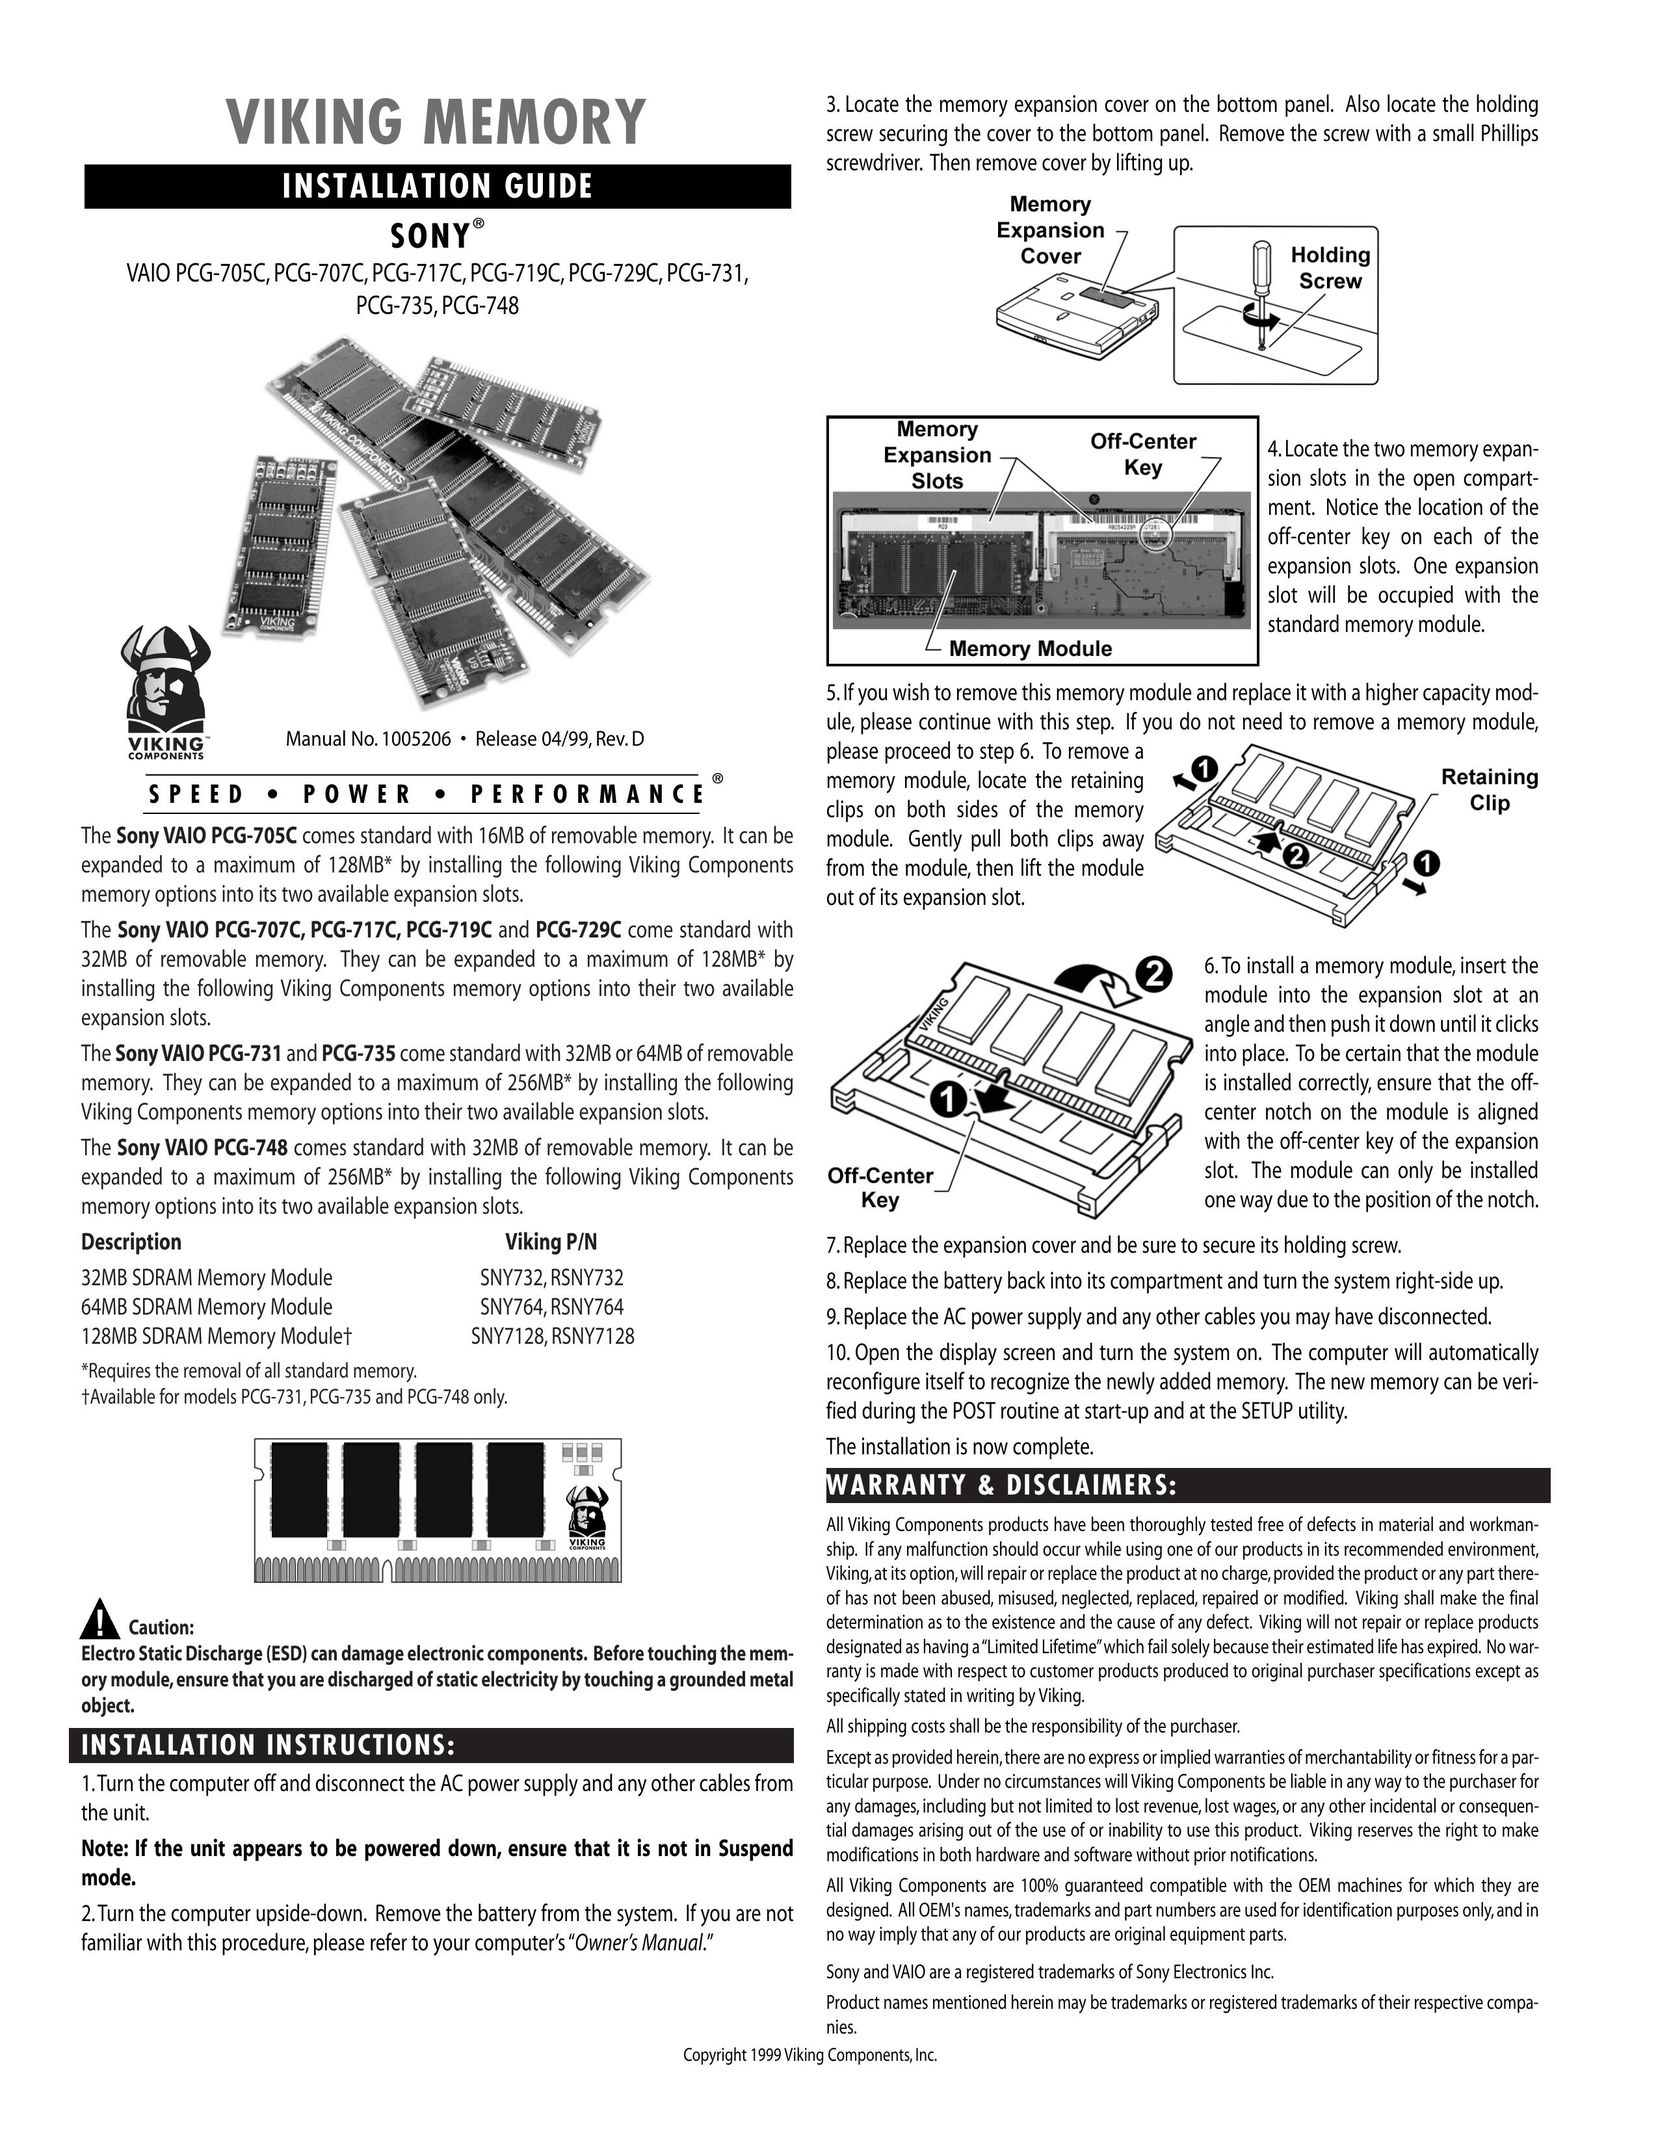 Viking InterWorks PCG-707C Personal Computer User Manual